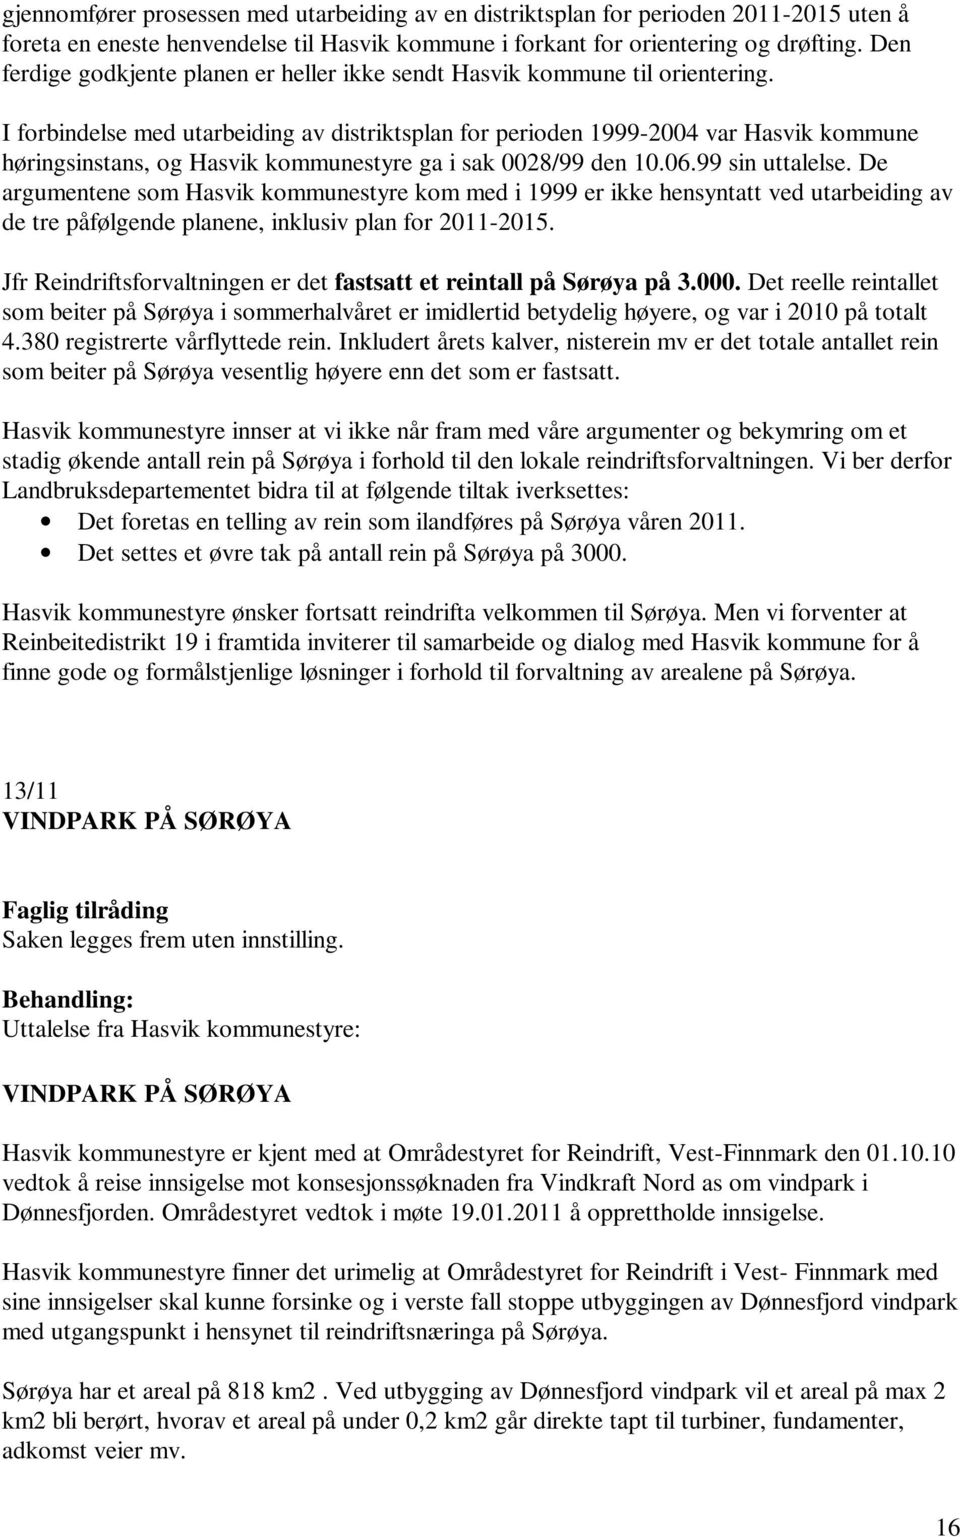 I forbindelse med utarbeiding av distriktsplan for perioden 1999-2004 var Hasvik kommune høringsinstans, og Hasvik kommunestyre ga i sak 0028/99 den 10.06.99 sin uttalelse.